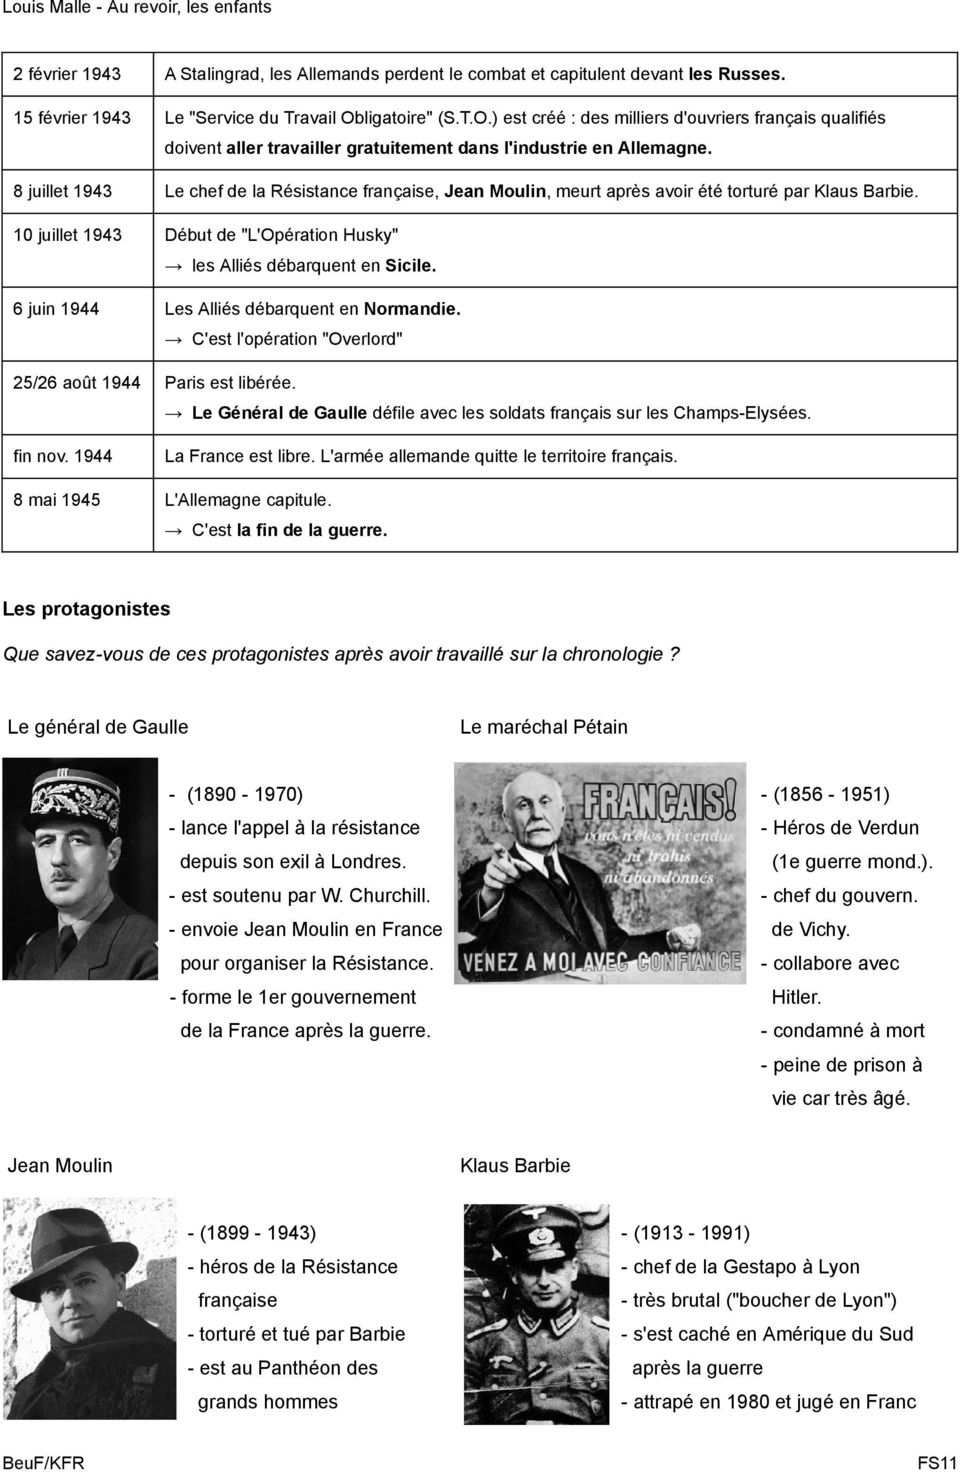 8 juillet 1943 Le chef de la Résistance française, Jean Moulin, meurt après avoir été torturé par Klaus Barbie. 10 juillet 1943 Début de "L'Opération Husky" les Alliés débarquent en Sicile.